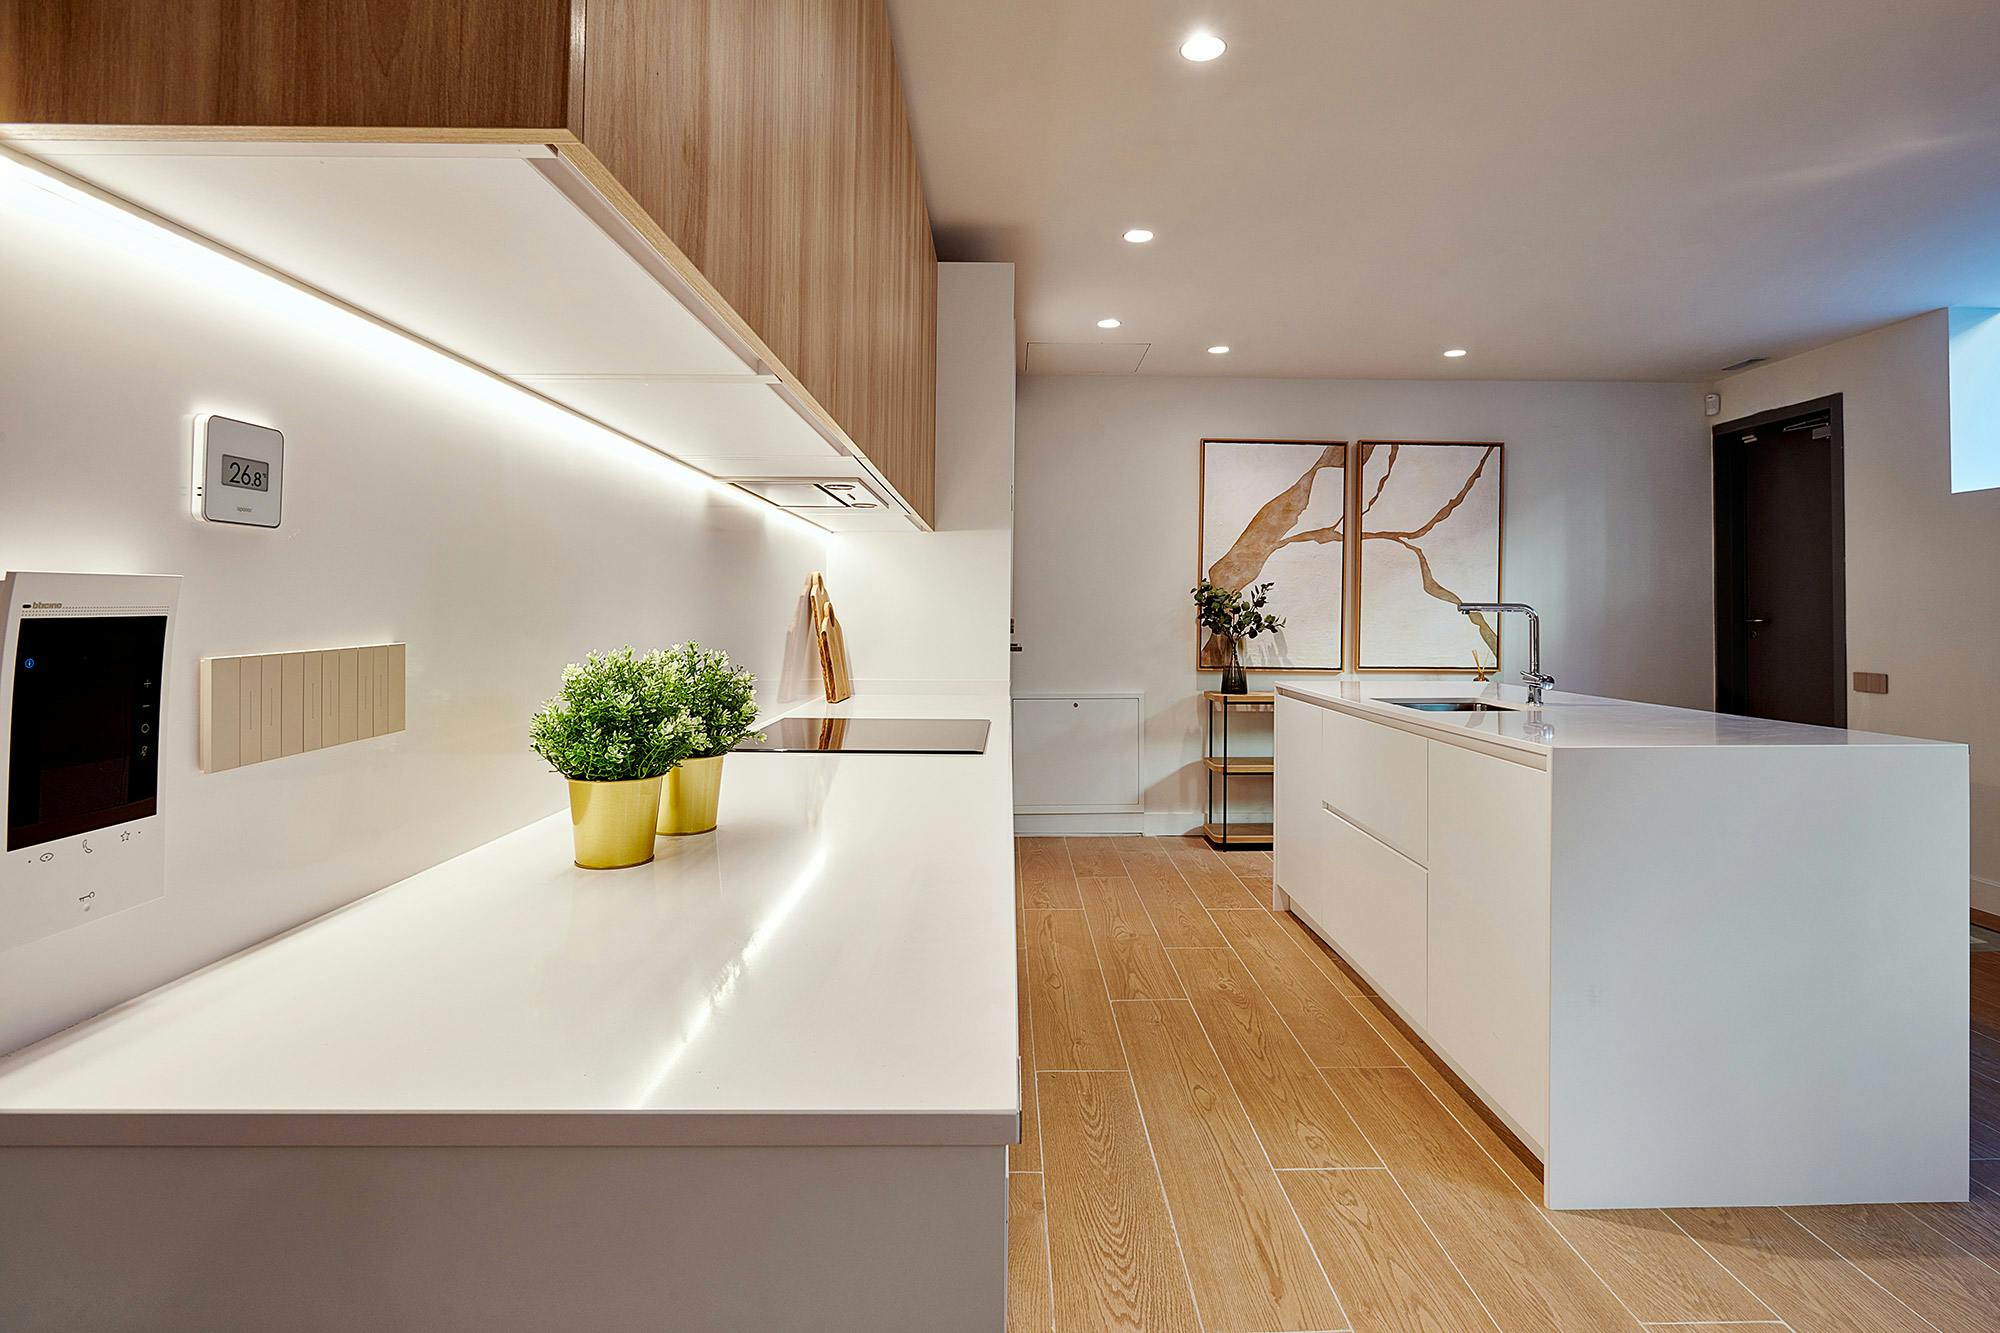 Imagen número 42 de la sección actual de Cosentino, protagonista de la nueva casa funcional, moderna y sostenible en el showroom de AEDAS Homes en Madrid